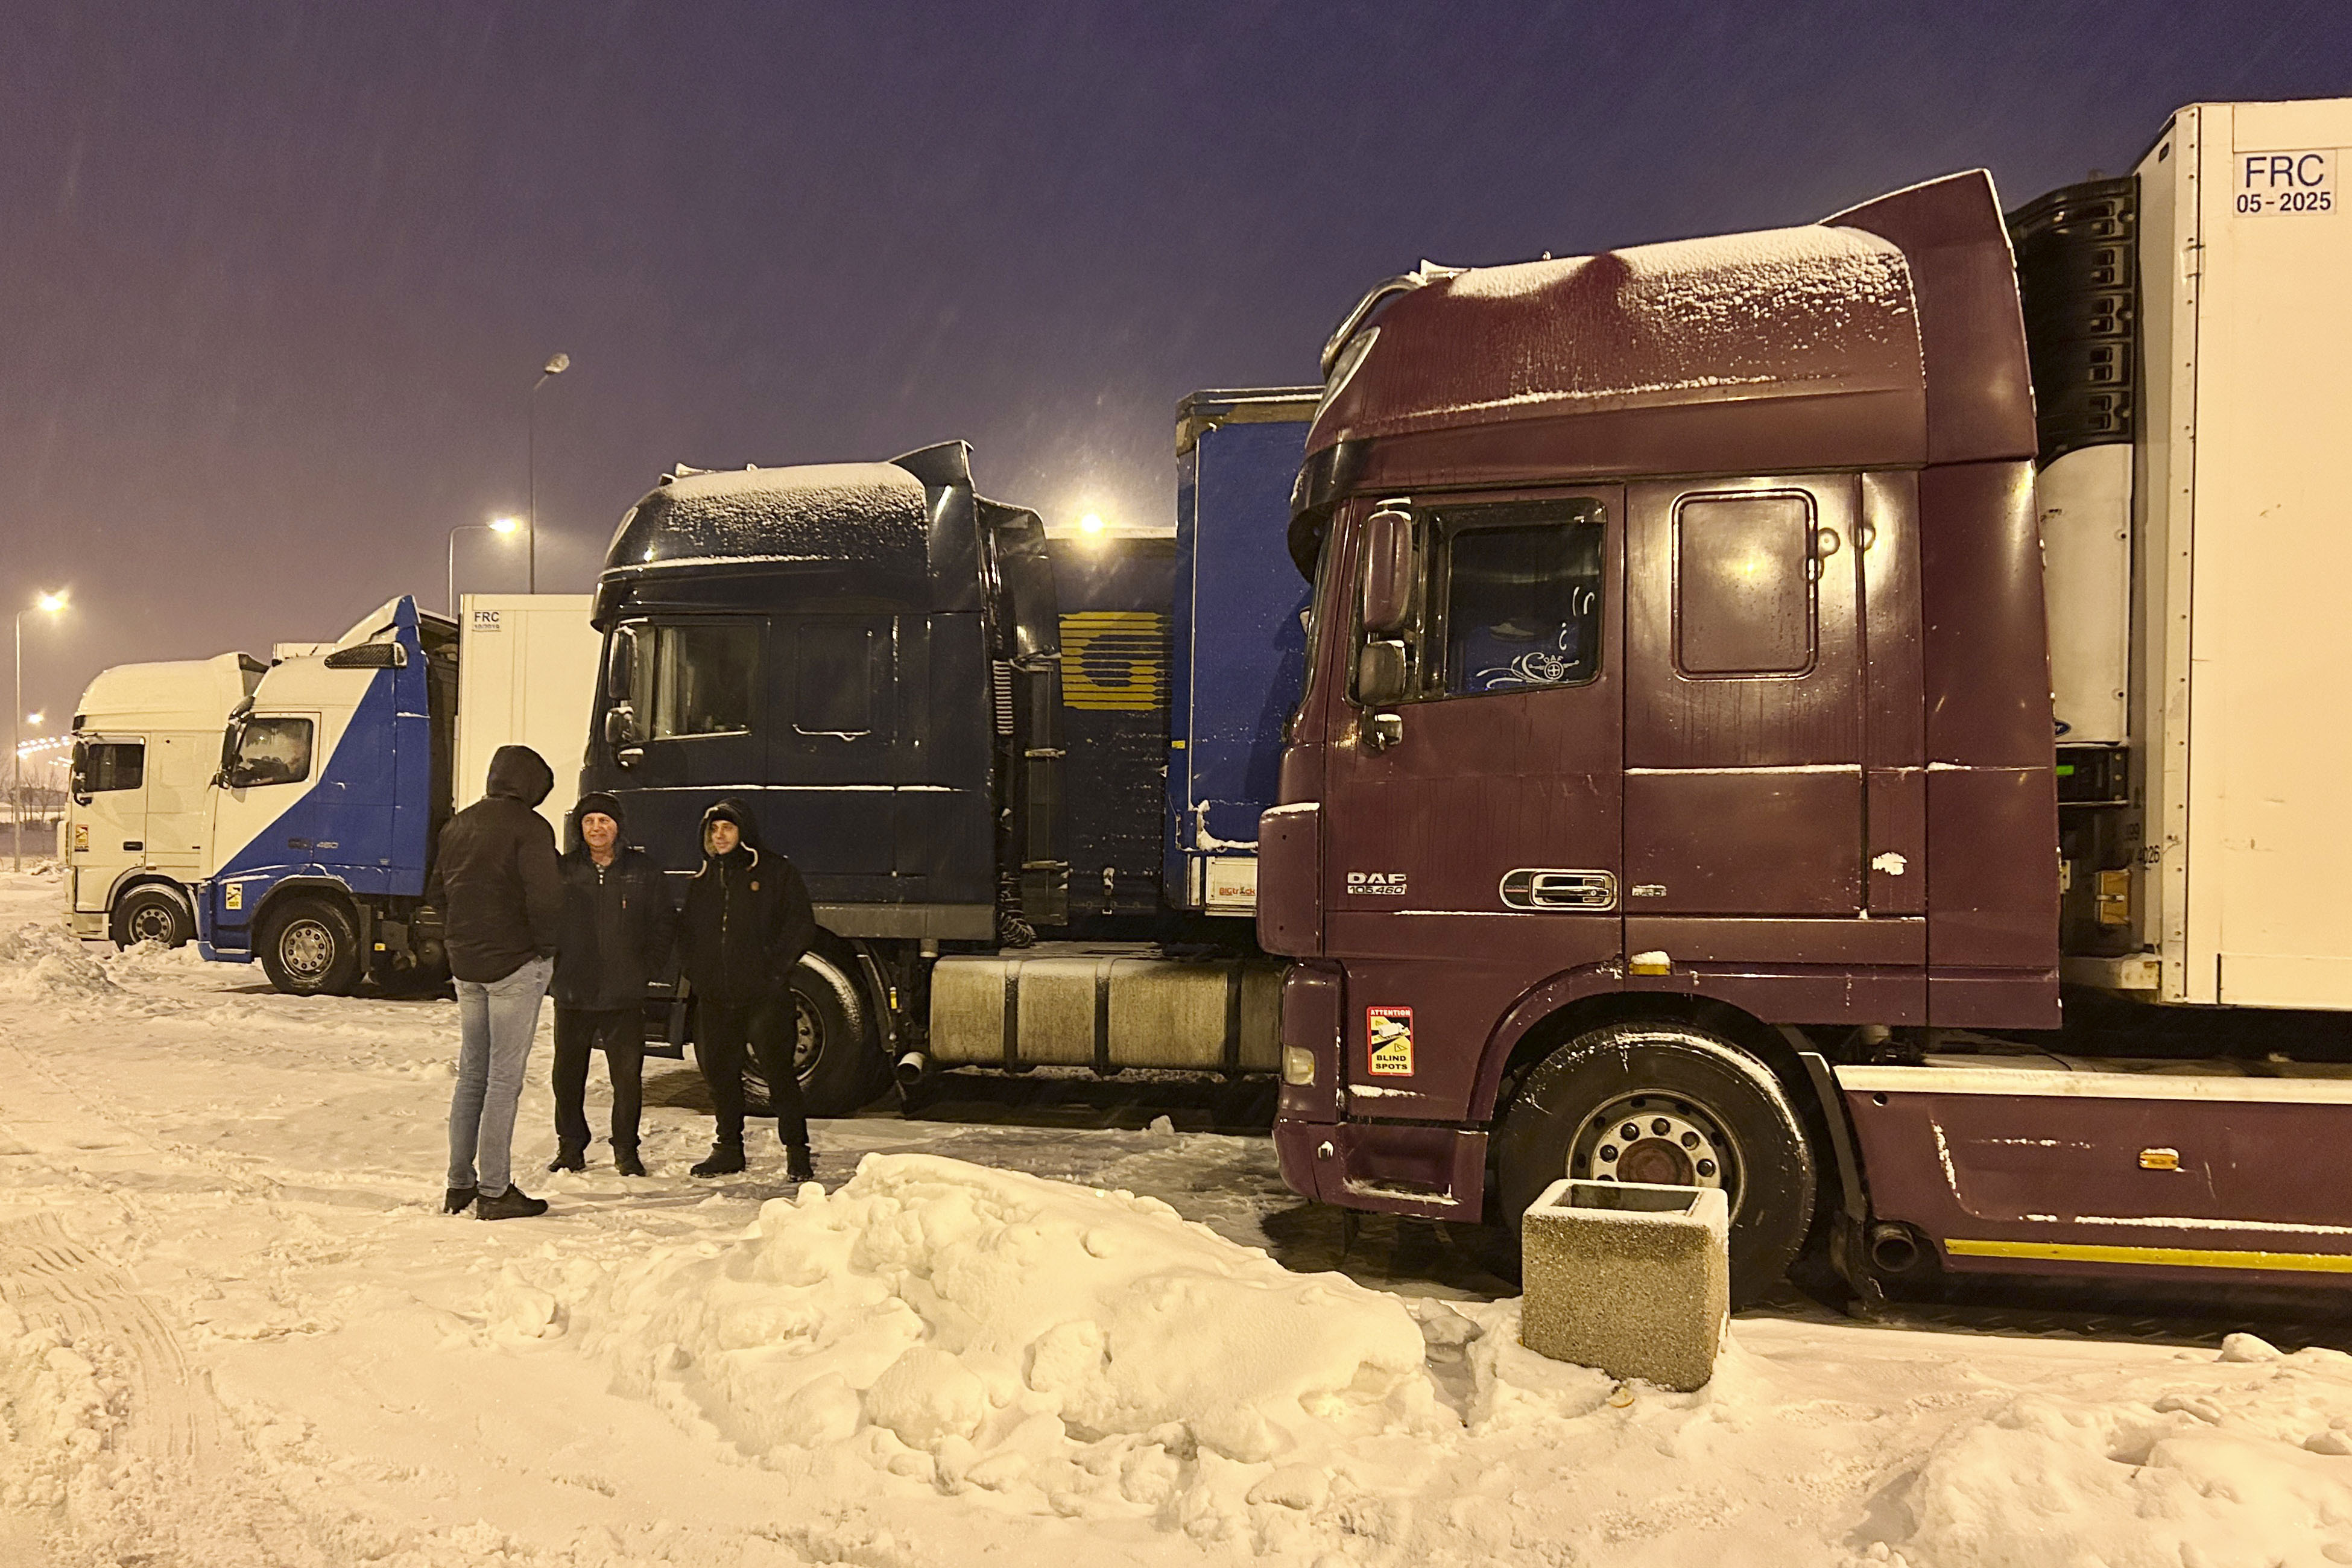 Полските шофьори на камиони прекратиха в неделя блокадата на граничен